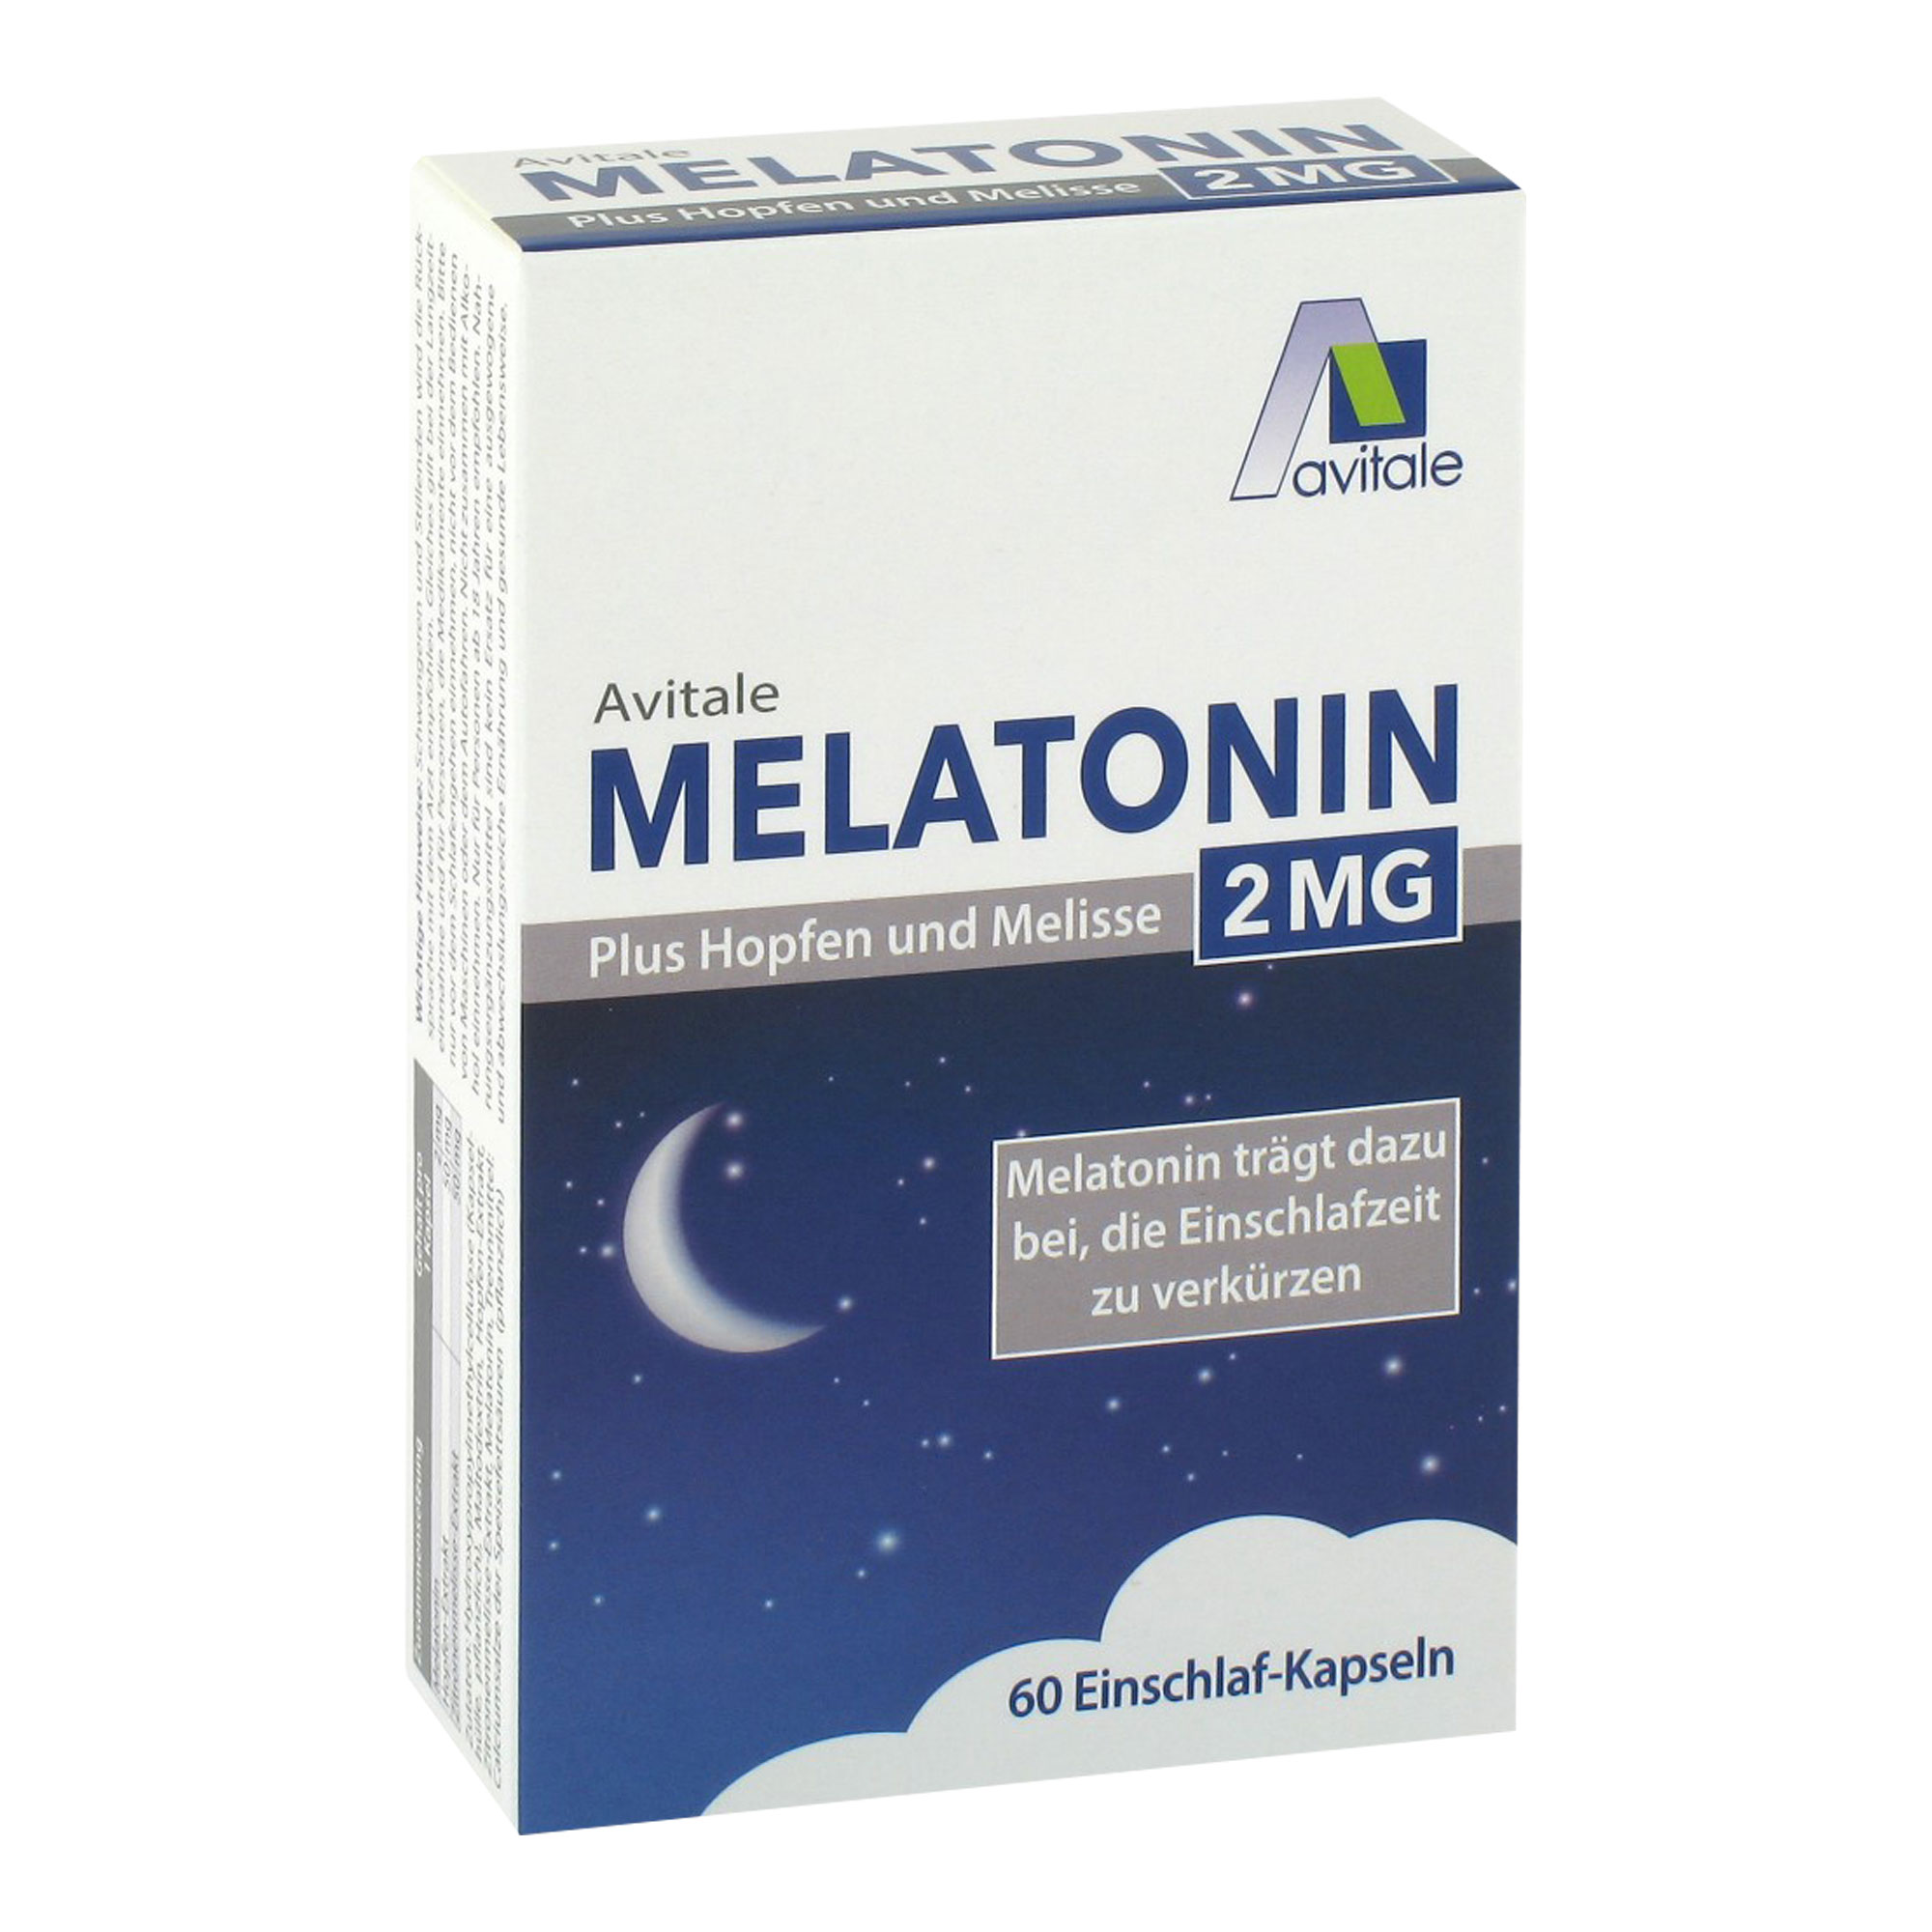 Nahrungsergänzungsmittel mit Melatonin, Hopfen- und Zitronenmelisse-Extrakt.